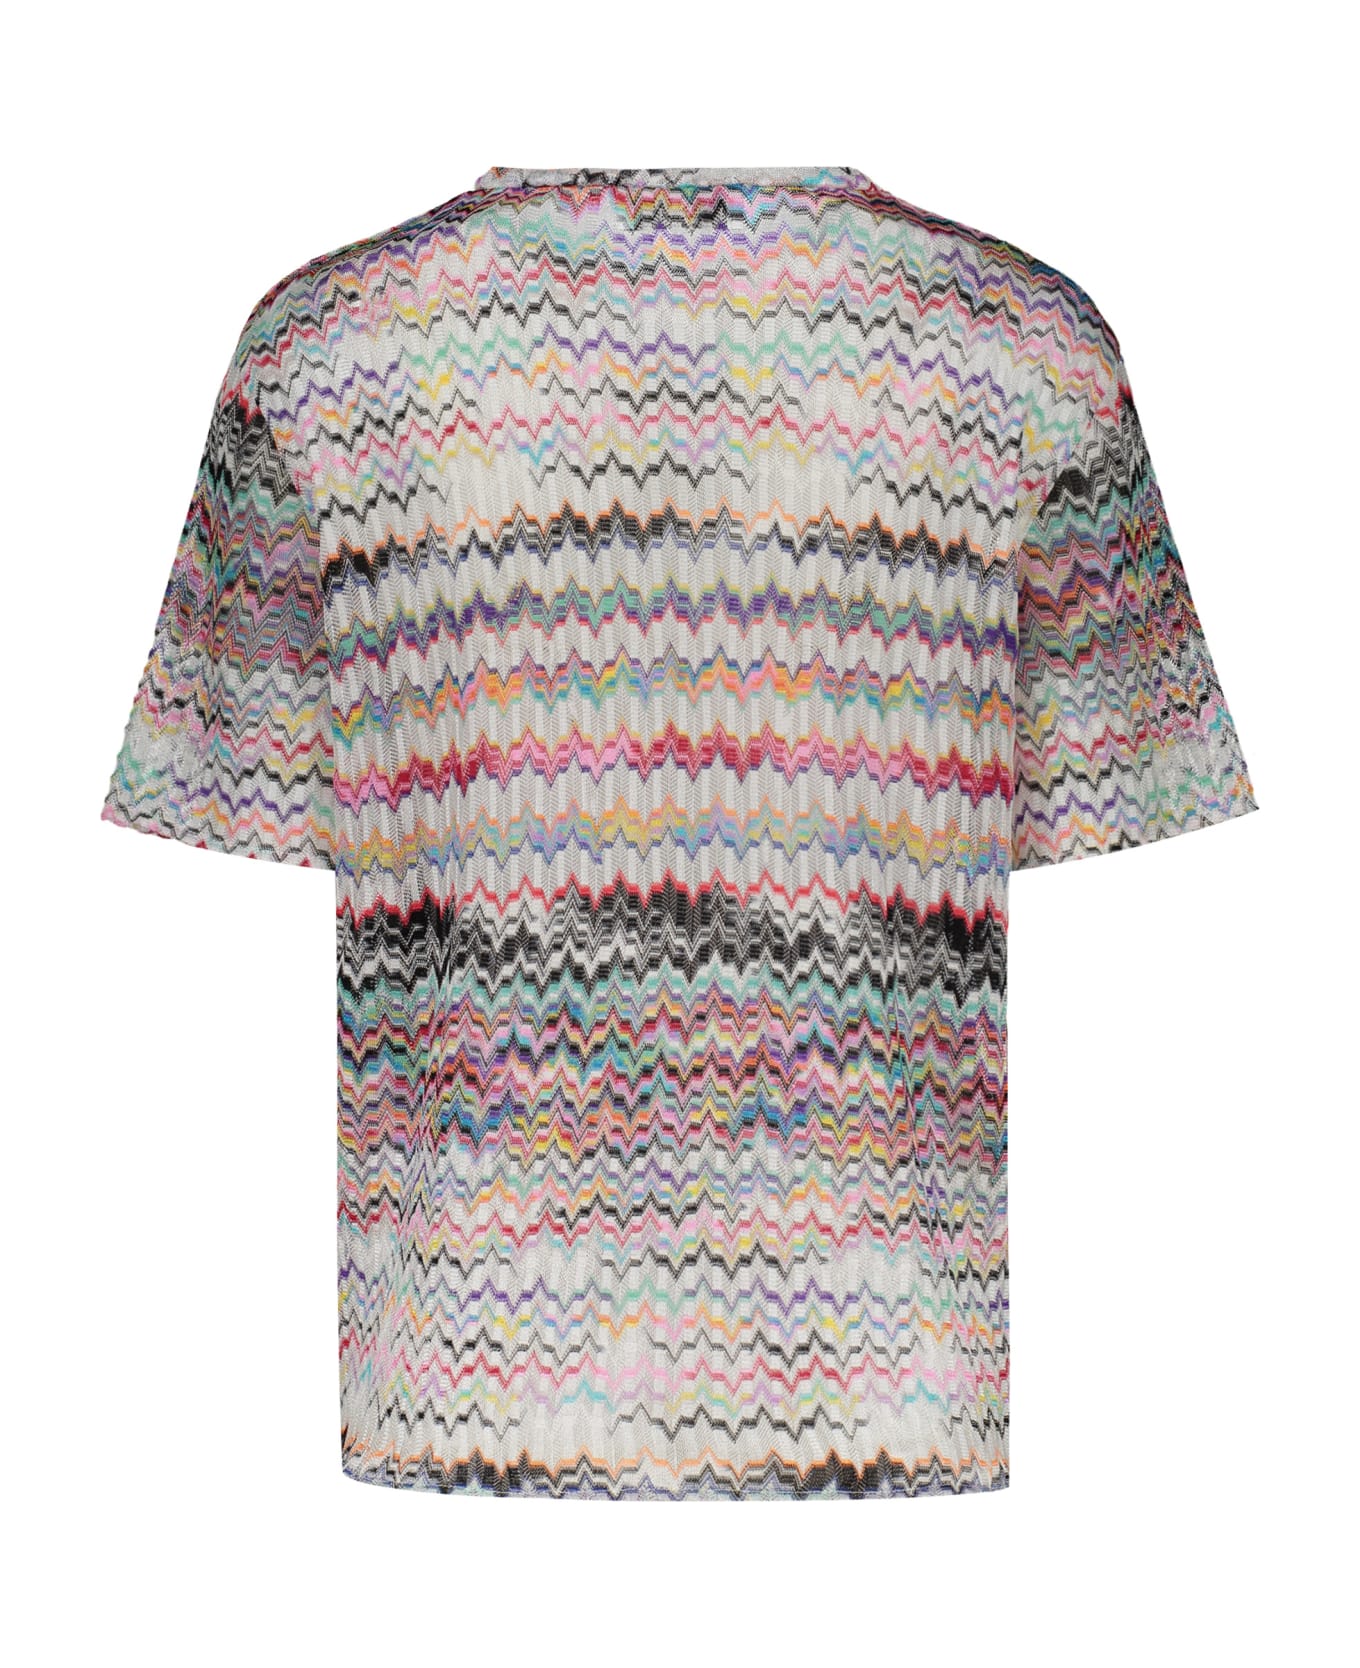 M Missoni Viscose Top - Multicolor Tシャツ